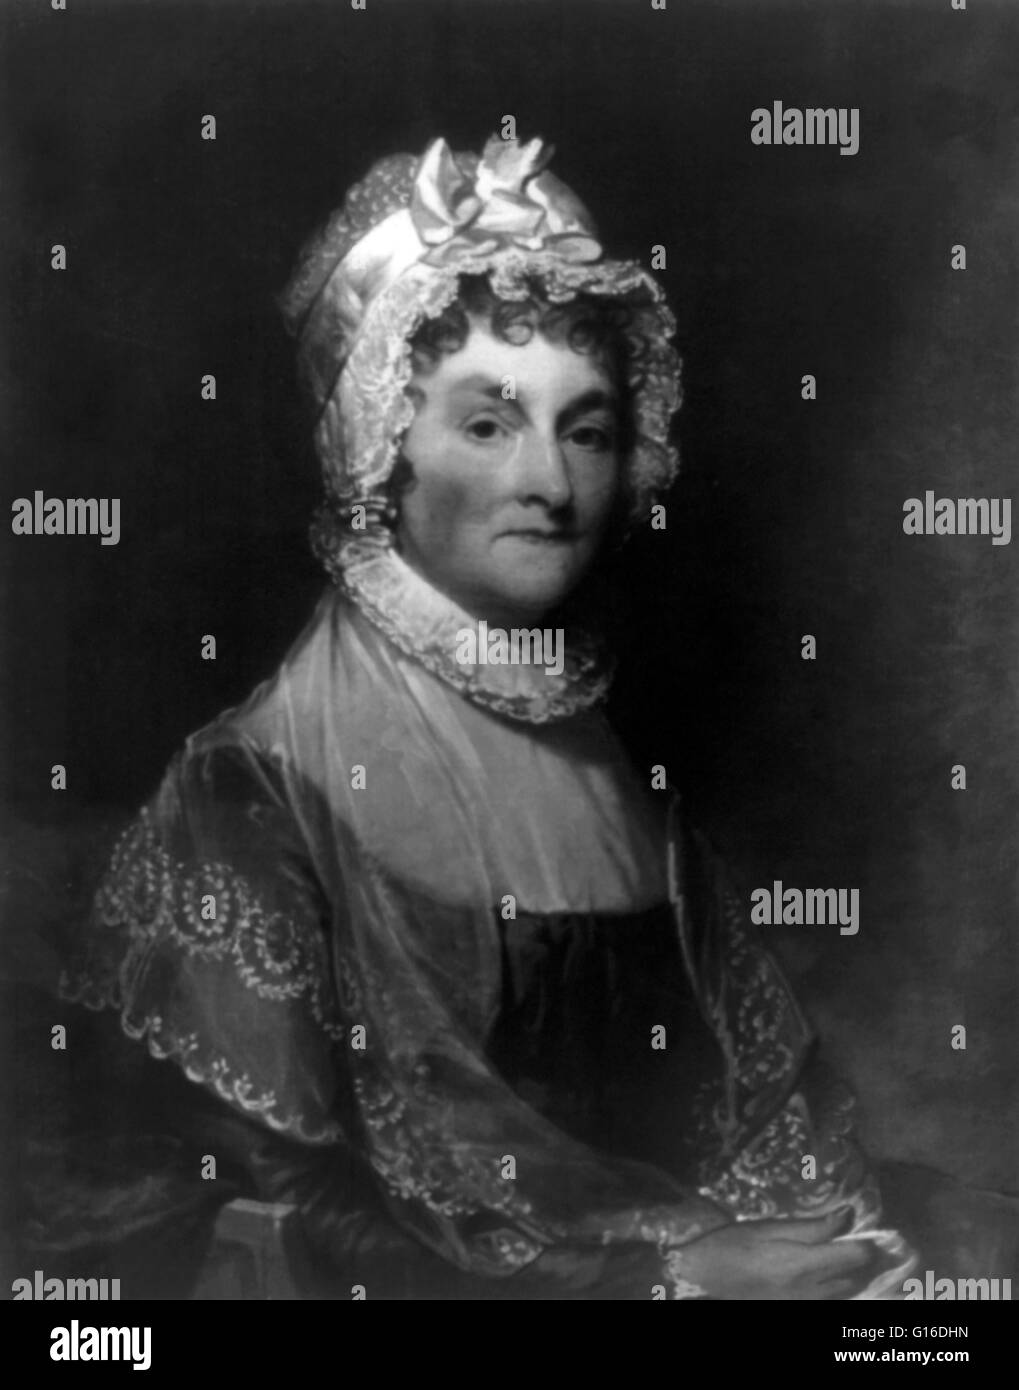 Abigail Smith Adams (22. November 1744 - 28. Oktober 1818) war die Ehefrau von John Adams, erster Vizepräsident und zweiter Präsident der Vereinigten Staaten, und die Mutter von John Quincy Adams, der sechste Präsident der Vereinigten Staaten. Ihr Leben ist einer der Stockfoto